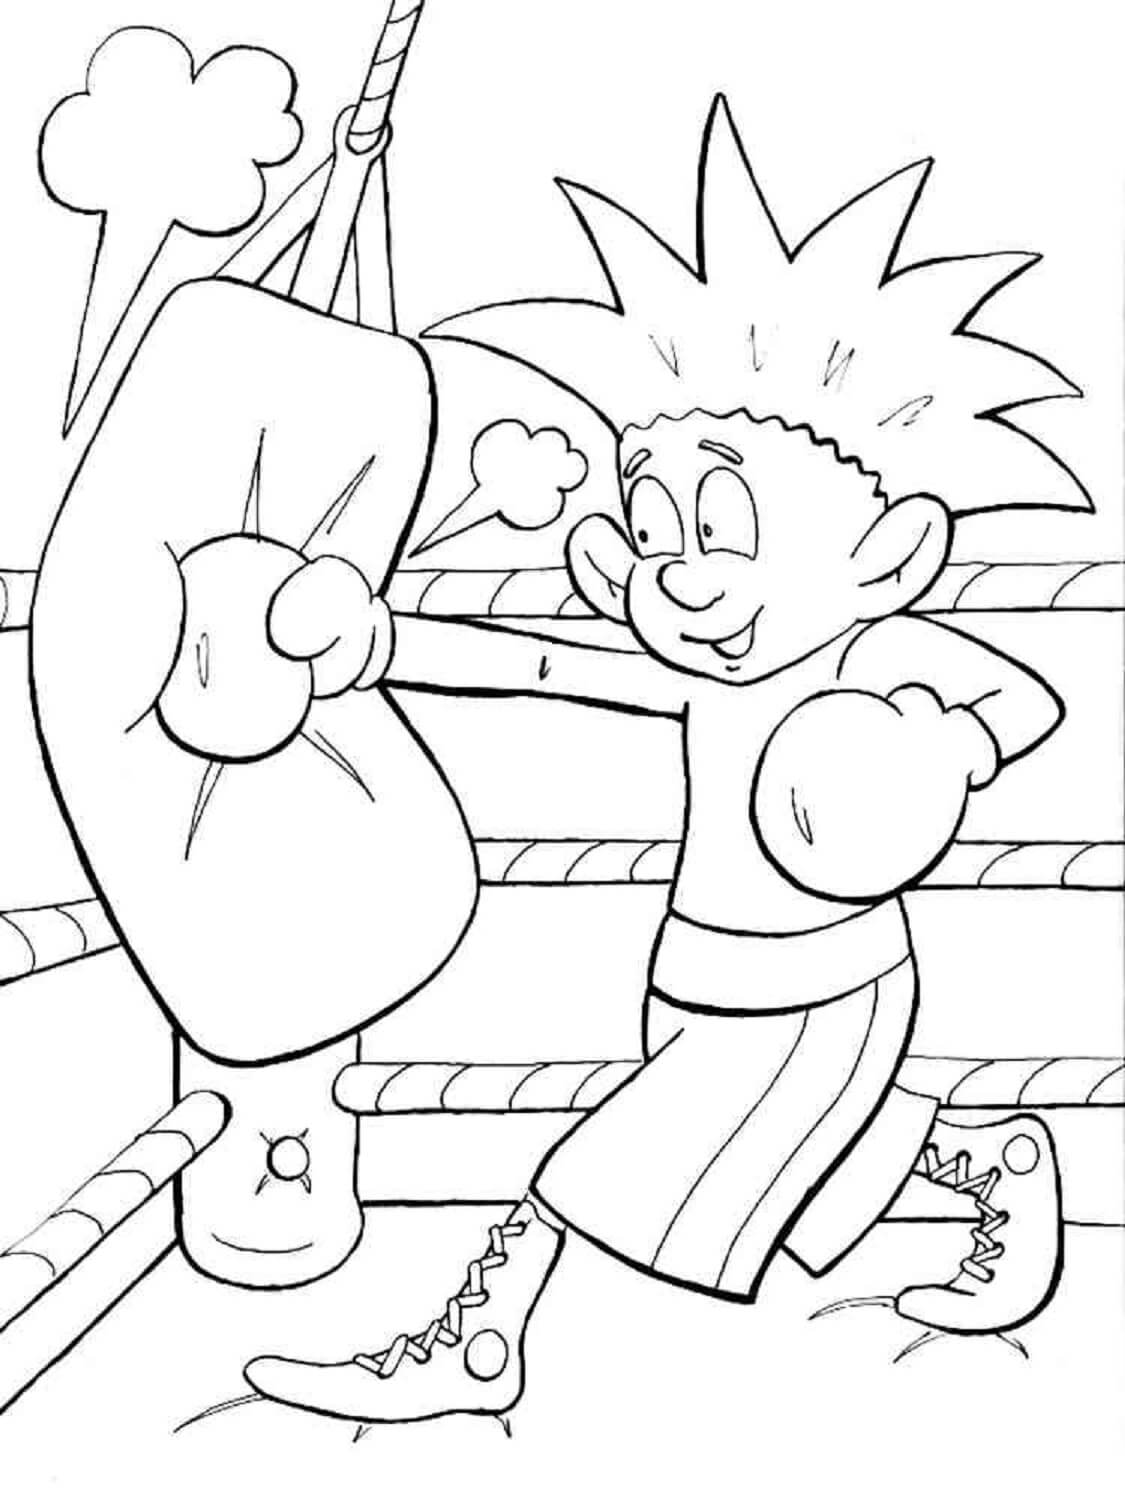 Cartoon Boy Boxer coloring page